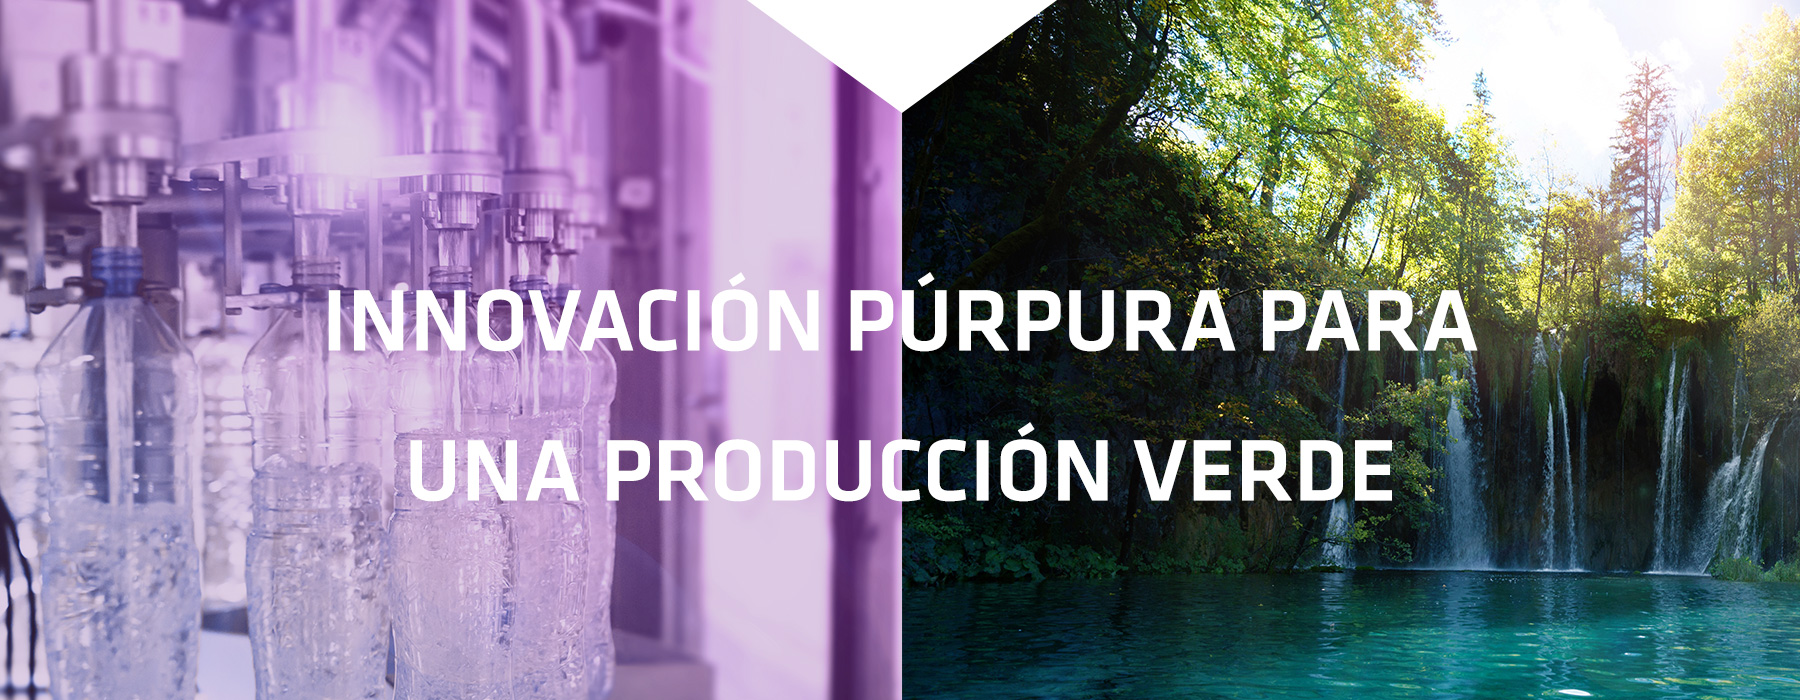 Innovación púrpura para una producción verde